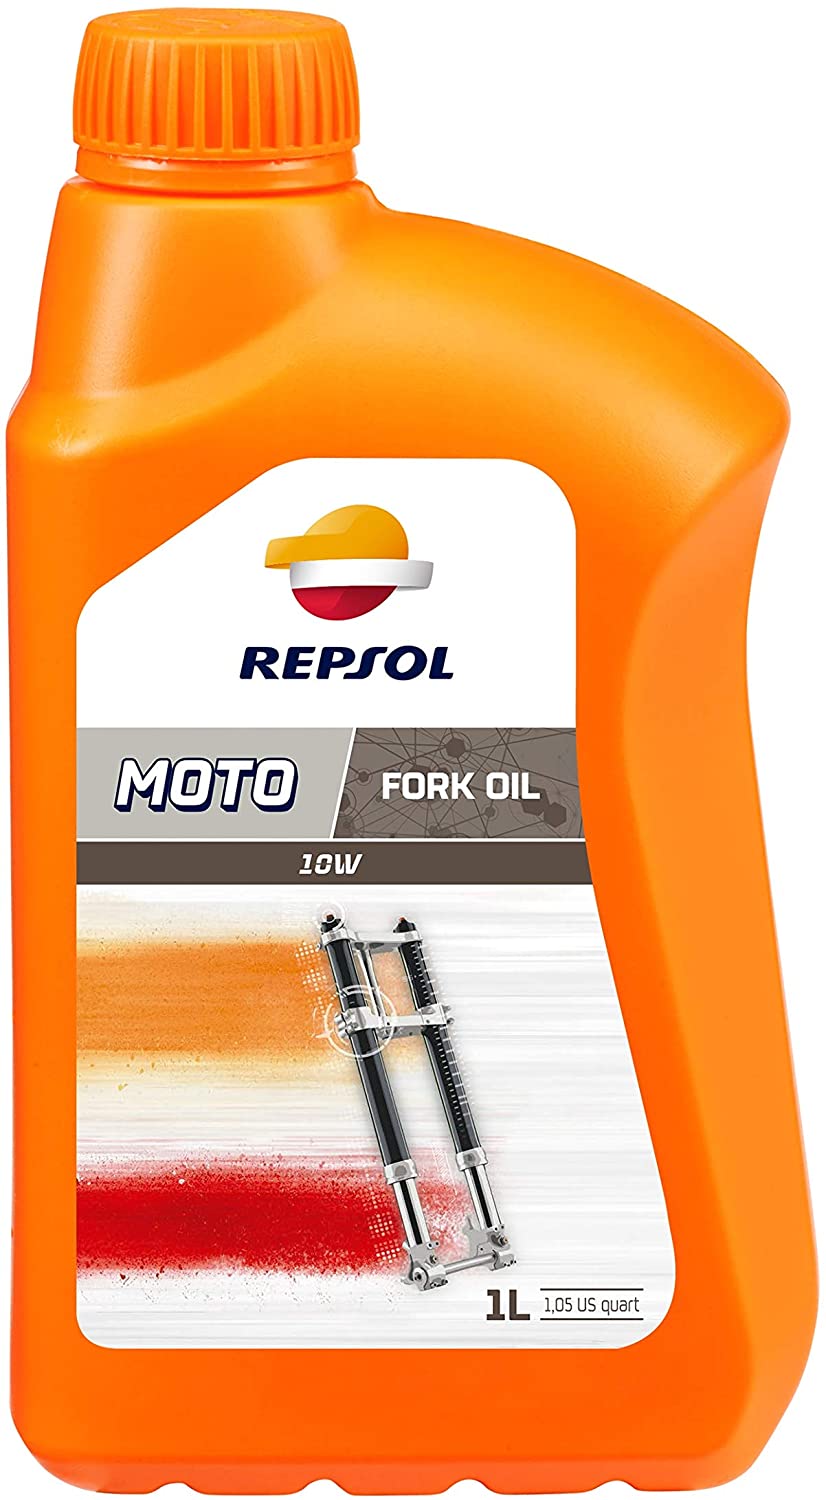 REP462001 REPSOL REPSOL MOTO FORK OIL 10W 1L